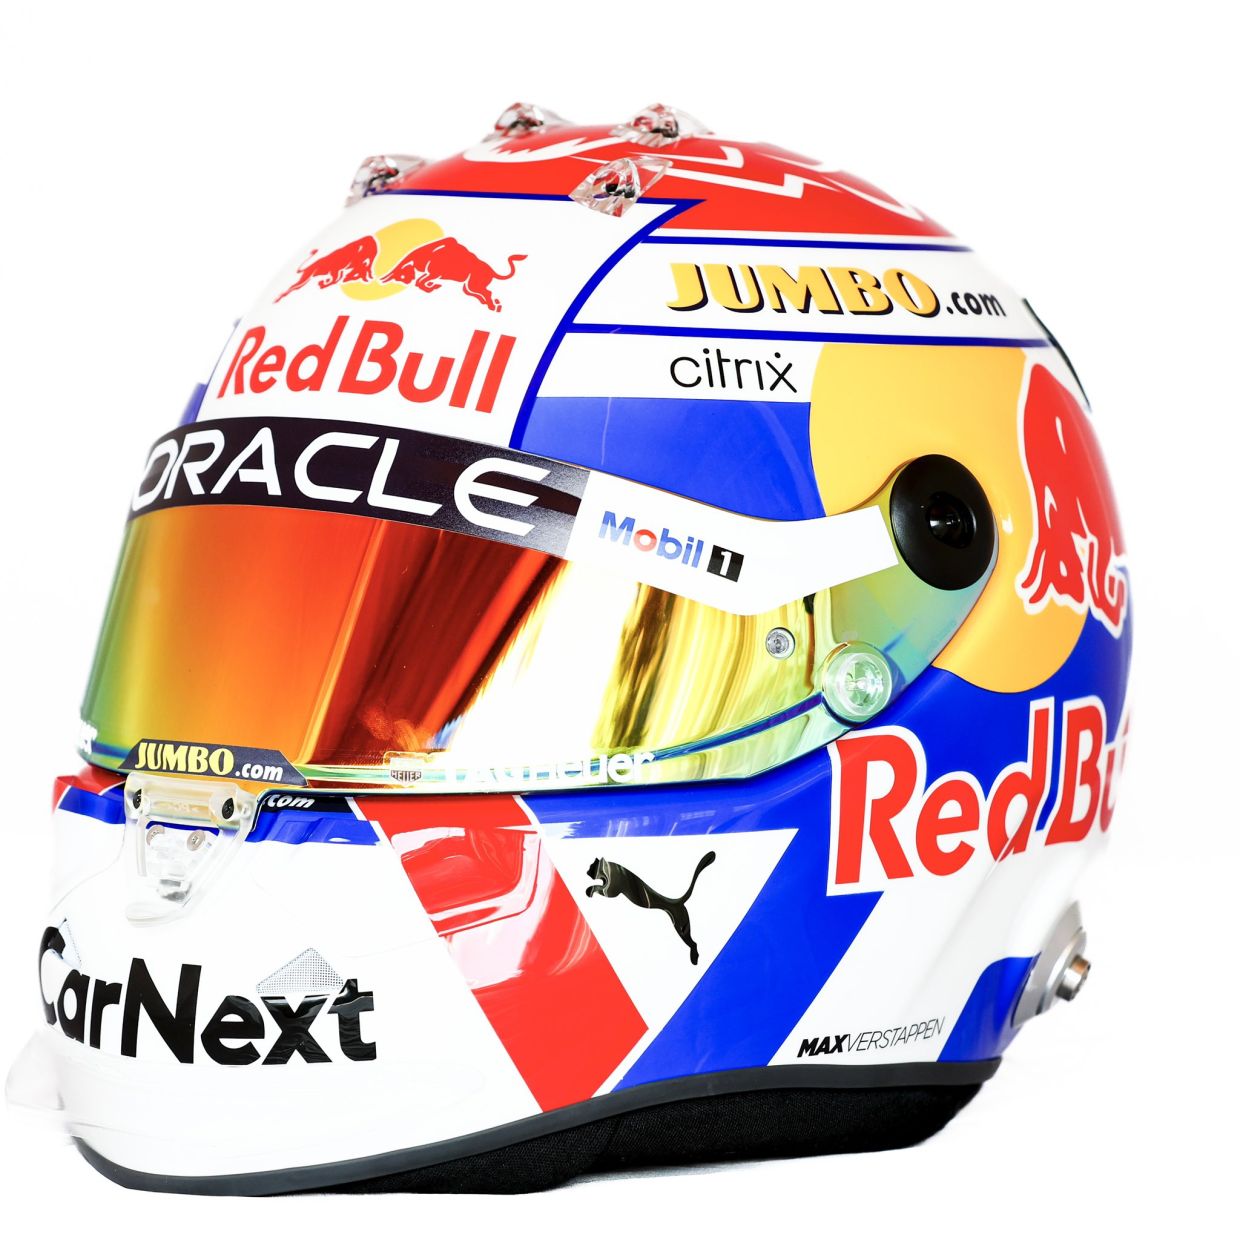 Макс Ферстаппен показал свой новый шлем перед Гран-при Нидерландов - изображение 1